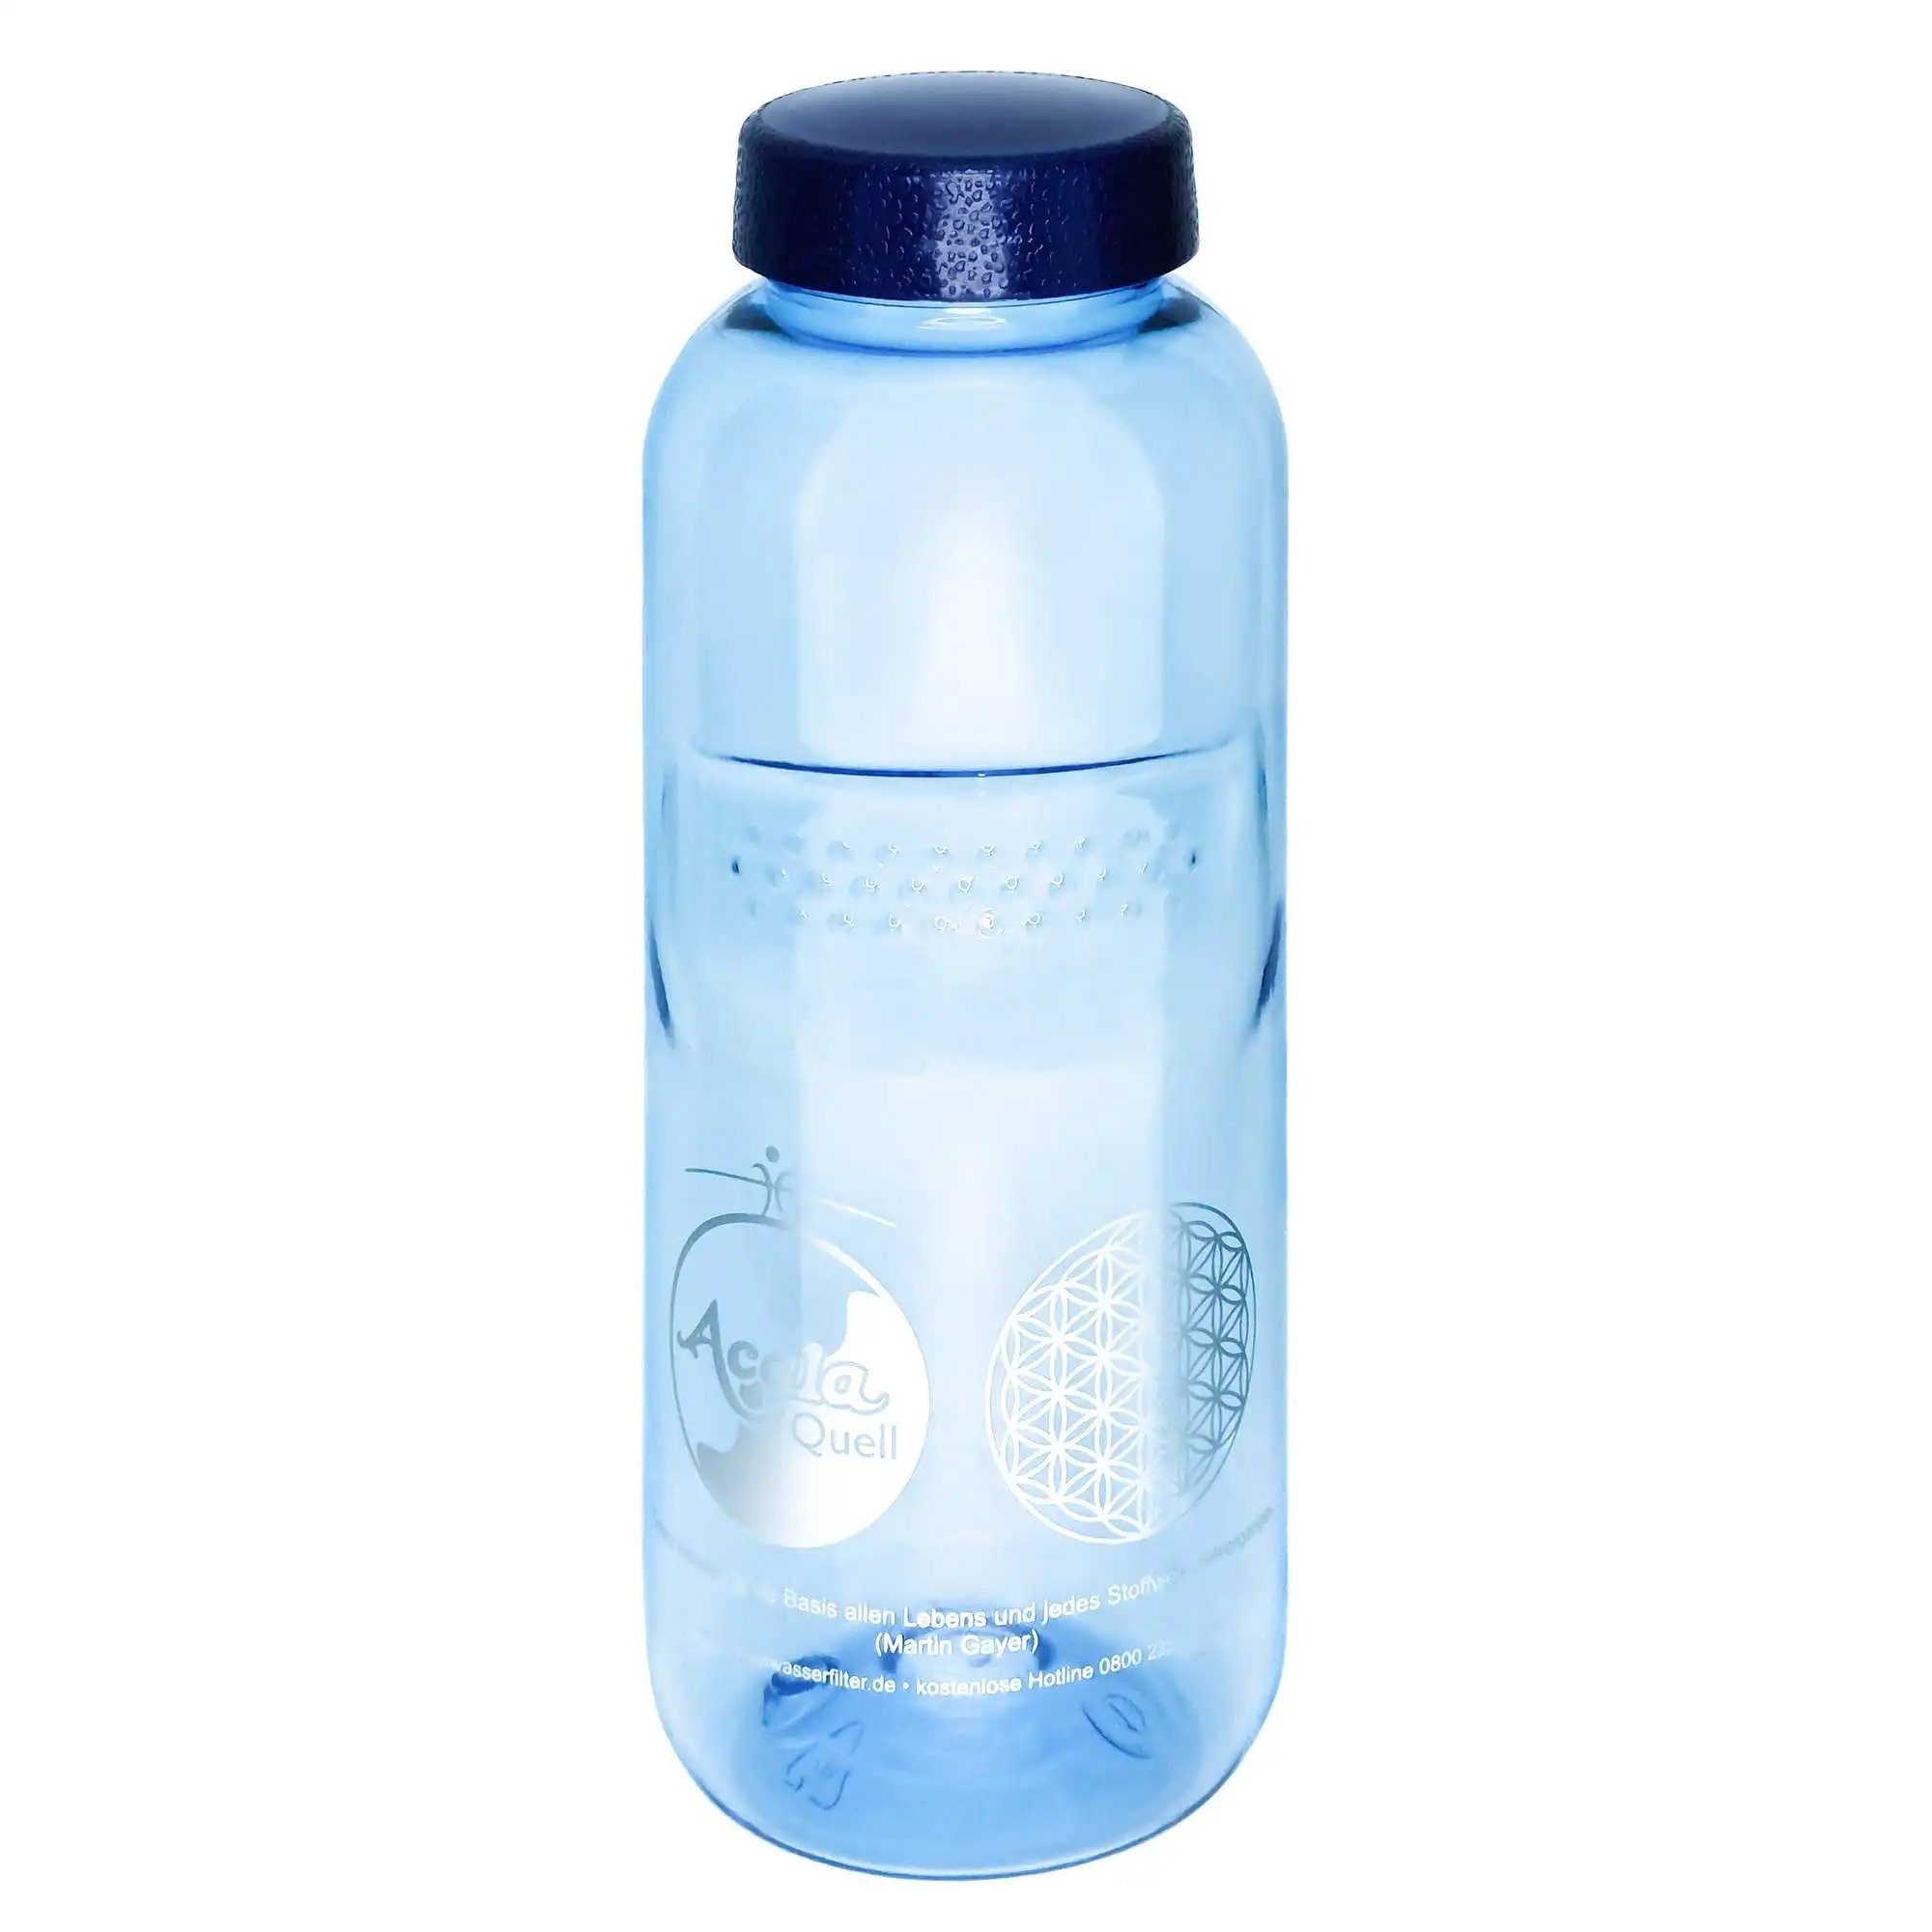 AcalaQuell Trinkflasche Optimal Set & 0,75L; 0,5L; lebensmittelecht 1x 1x 1,0L, weichmacherfrei 1x Grip